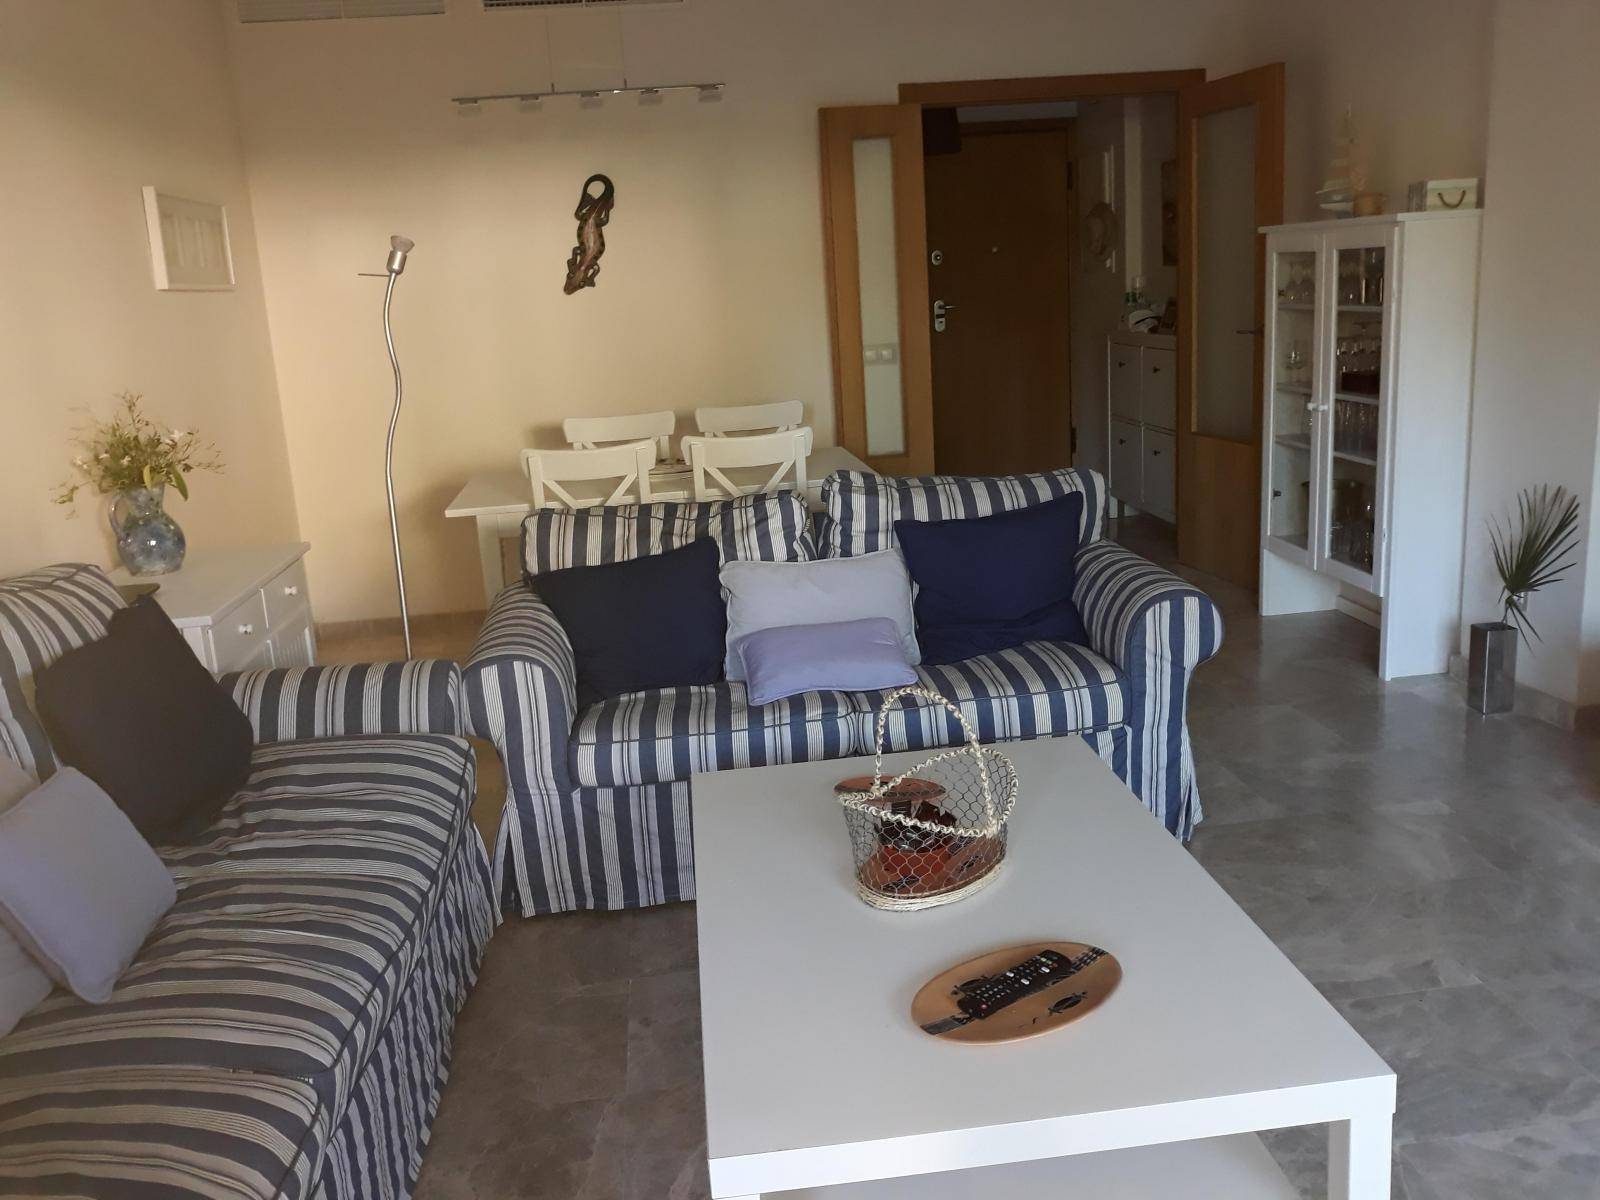 Se alquila piso de vacaciones de 2 dormitorios y 2 baños en Res. Mar Abierto de Costa Ballena con garaje y piscina y jardín comunitarios